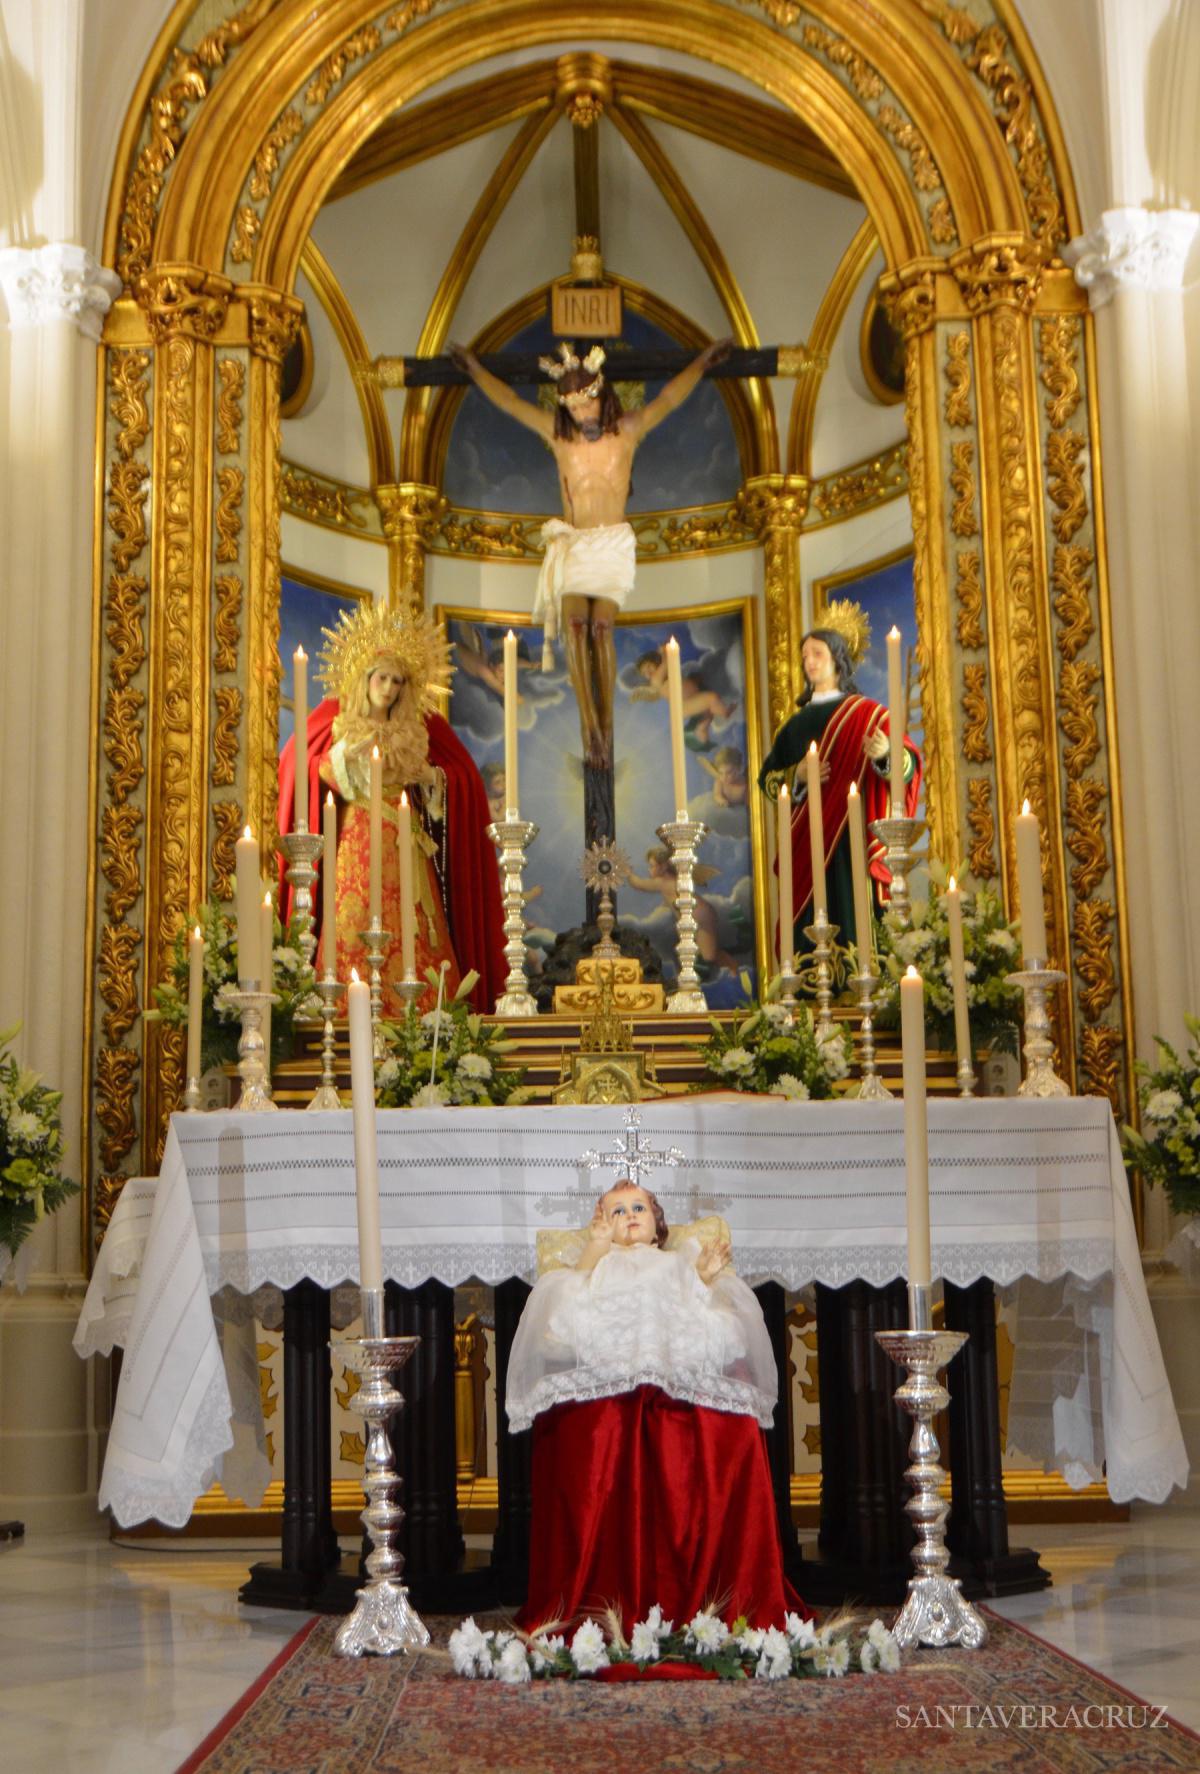 Festividad de la presentación de nuestro Señor en el templo y purificación de la Virgen María.